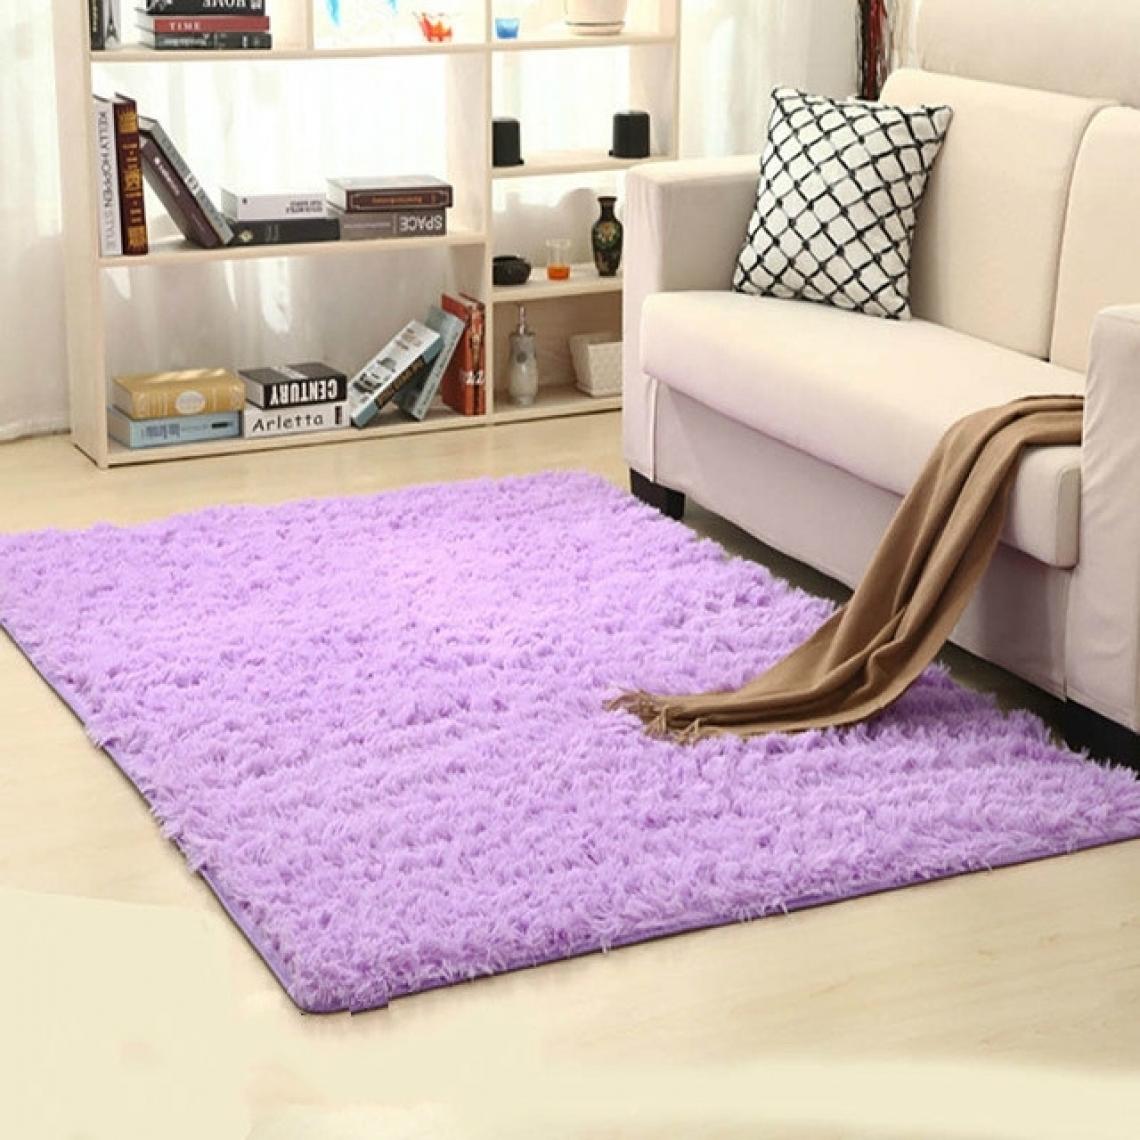 Wewoo - Tapis shaggy pour salon de plancher en peluche chauds la maisontapis de chambre fausse fourrure d'enfanttaille 160x200cm violet - Tapis